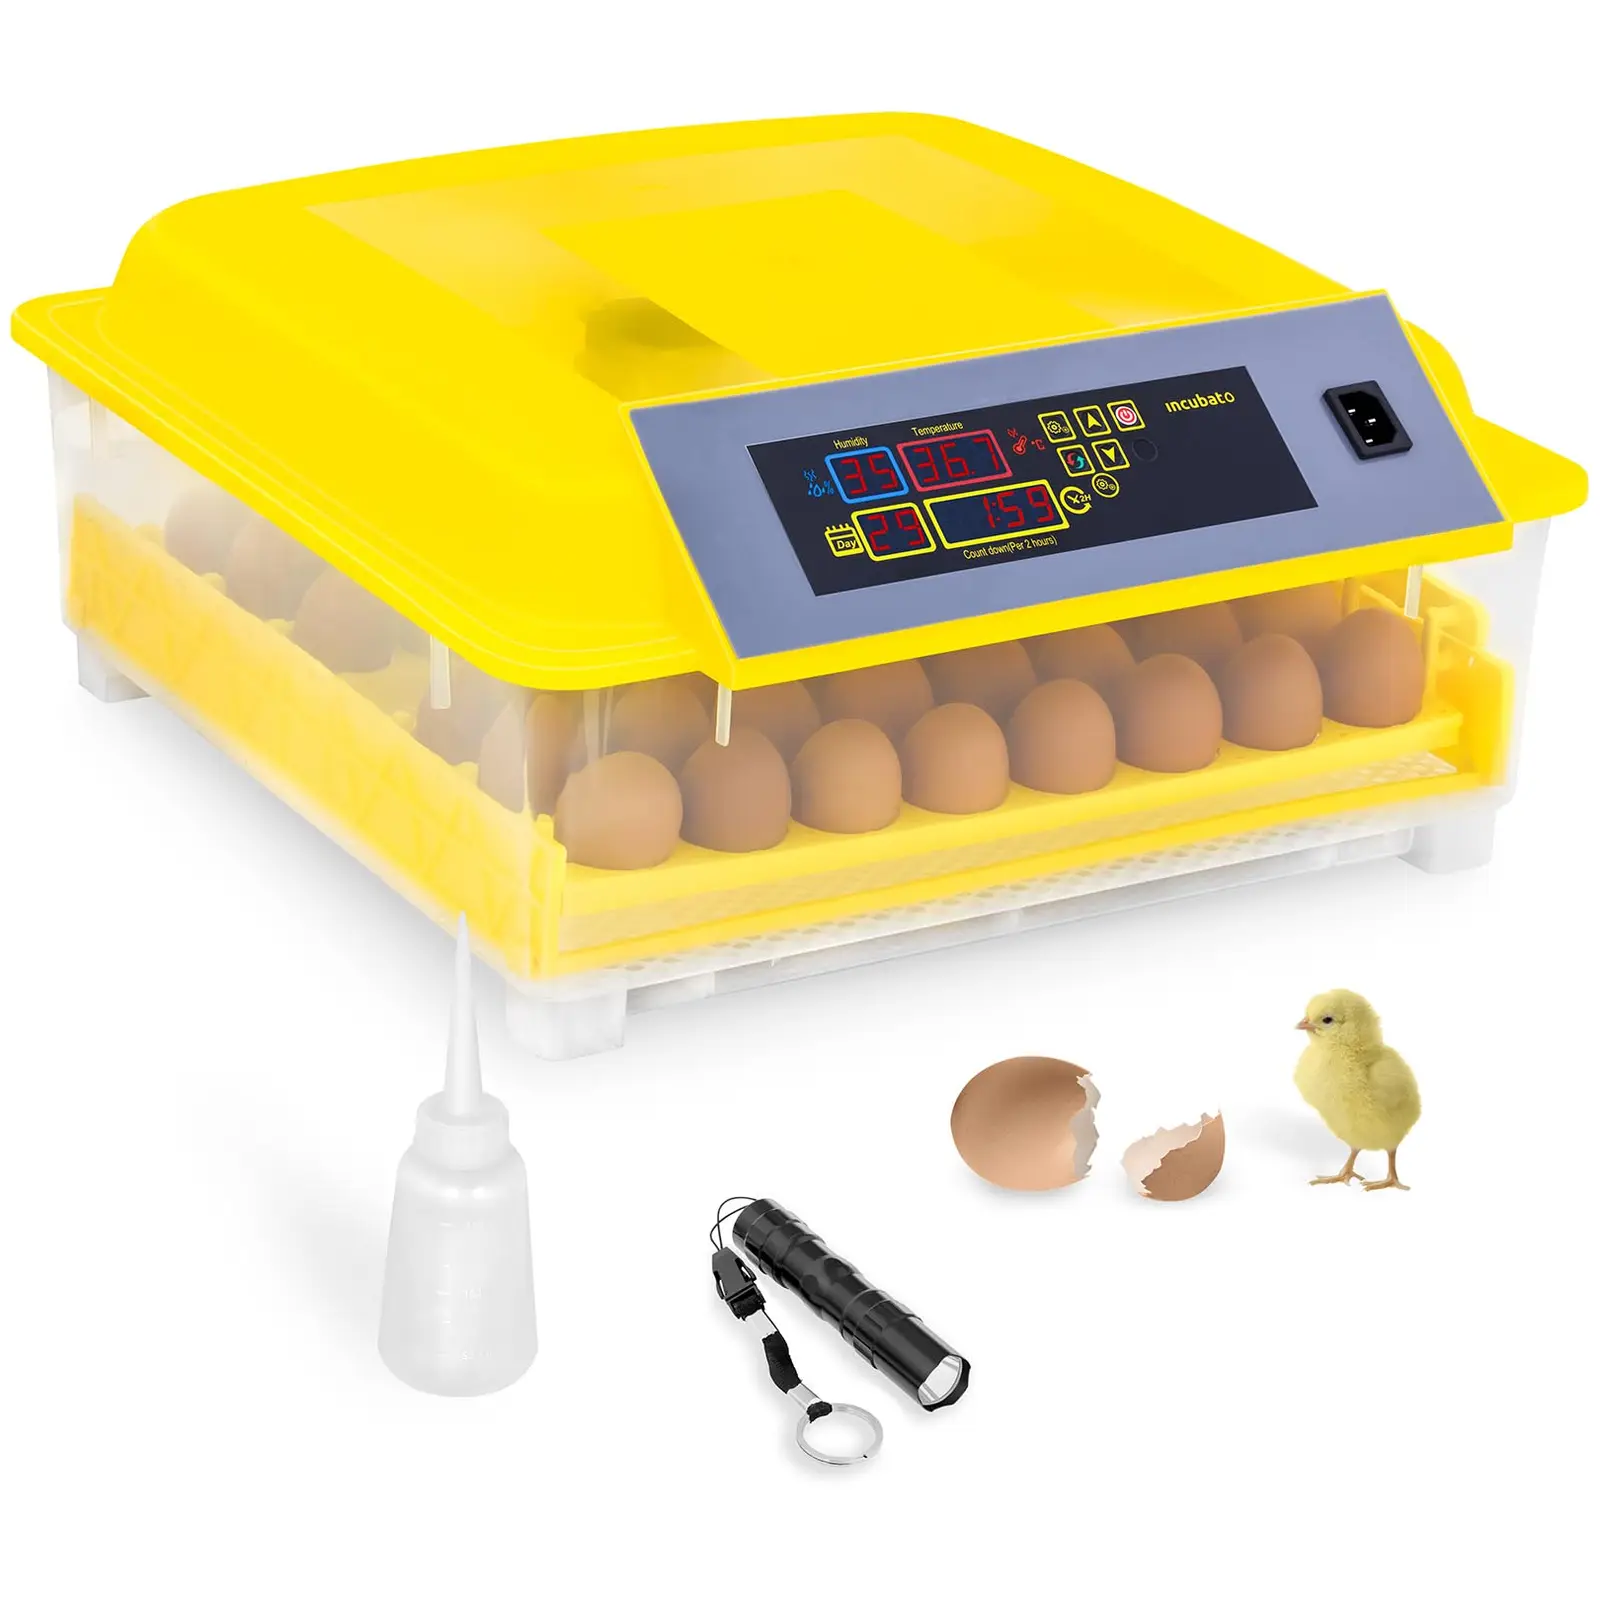 Incubatrice per uova professionale - 48 uova - lampada sperauova e distributore d’acqua inclusi - completamente automatica